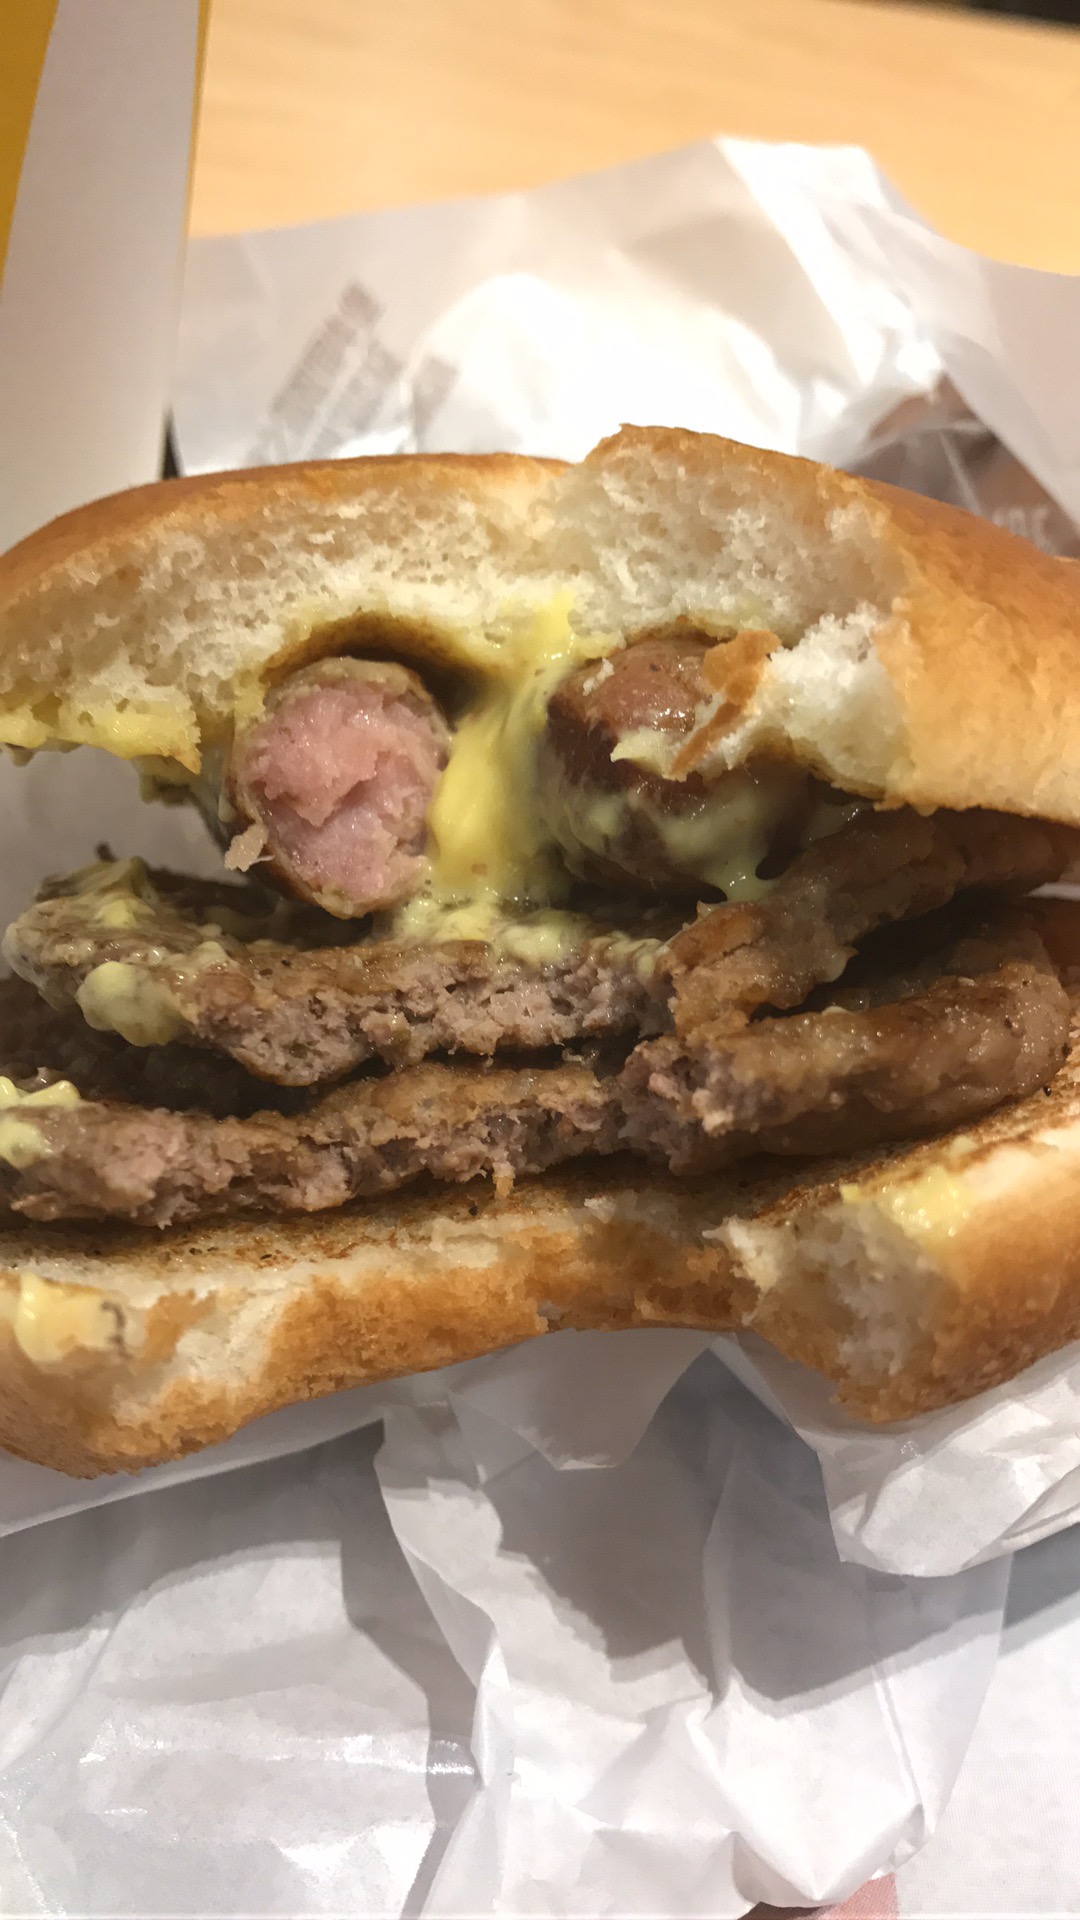 "tysk" burger fra McDonalds. To gange bøf og to pølser med sennep mellem to burgerboller. 